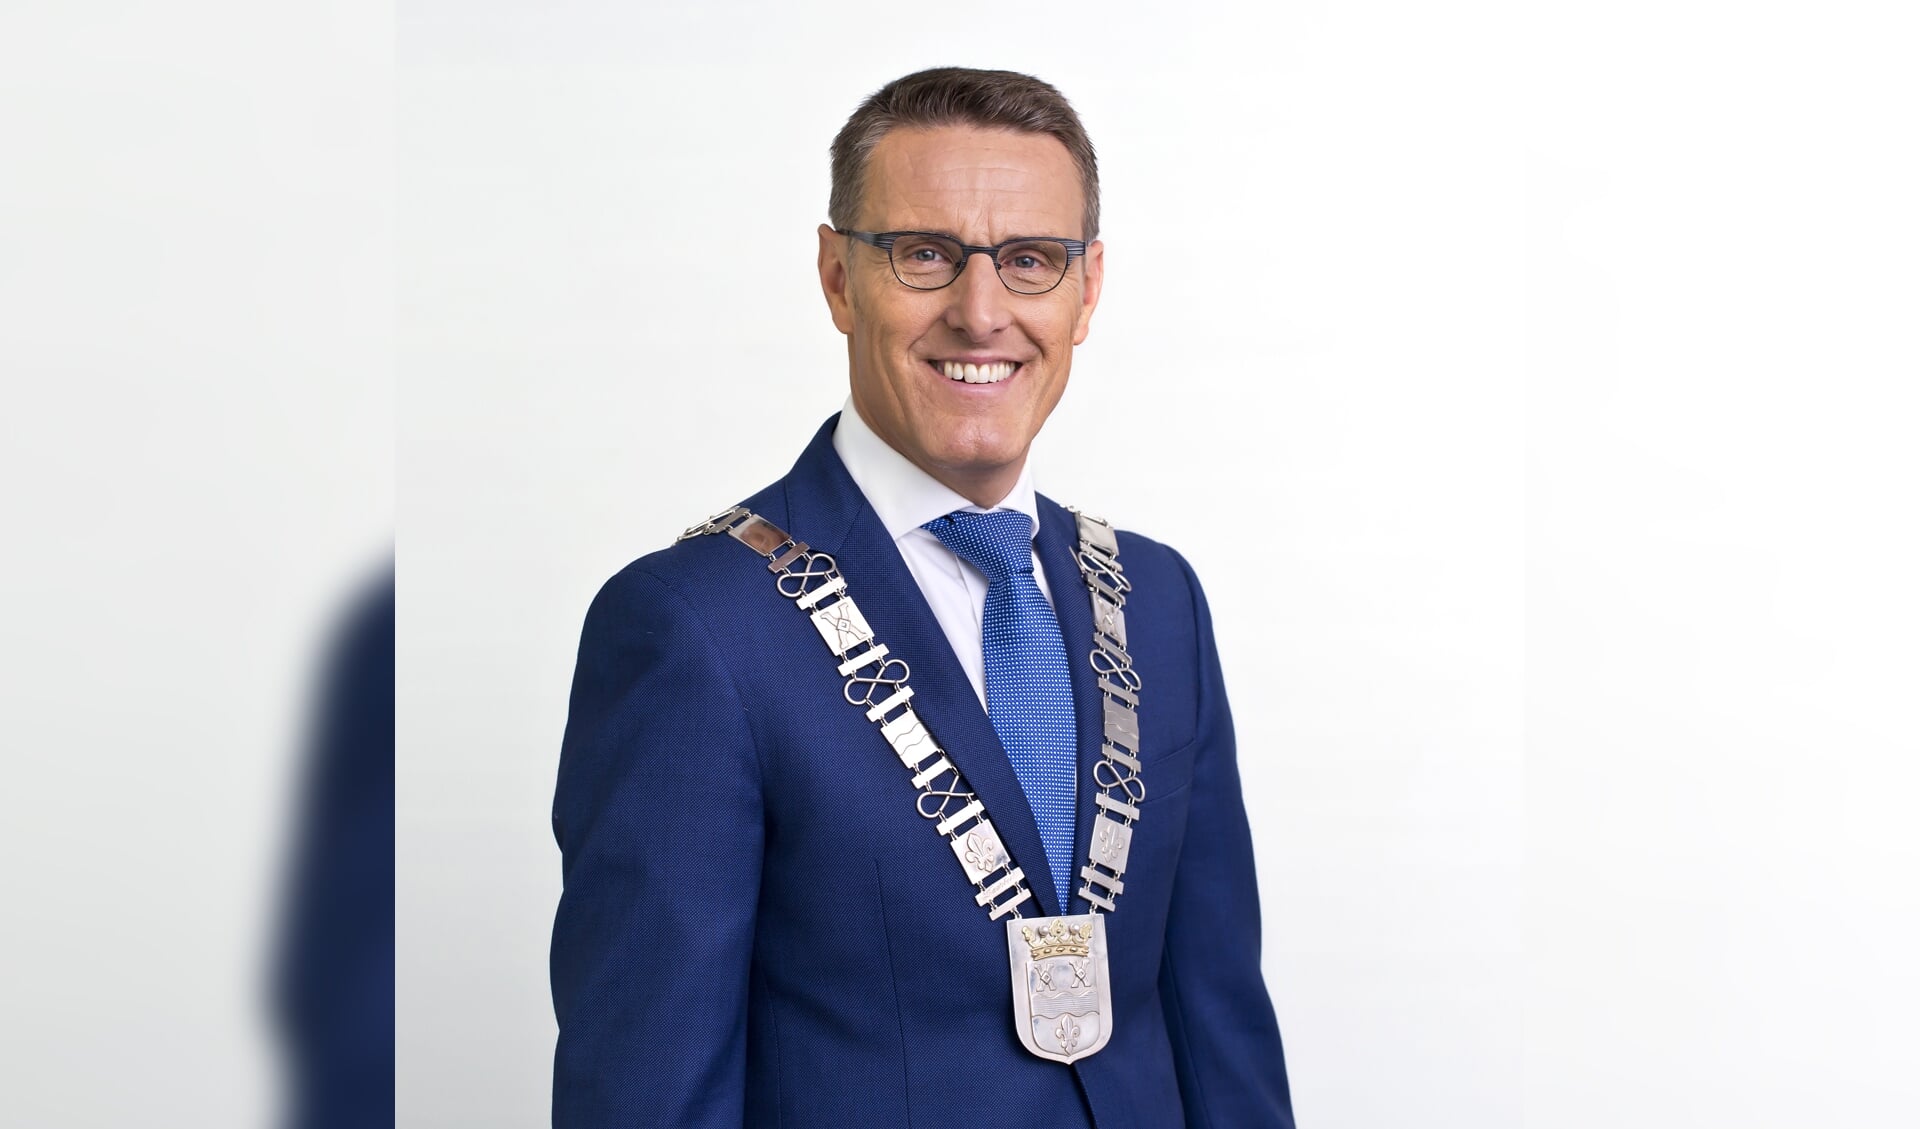 Burgemeester Frank van der Meijden